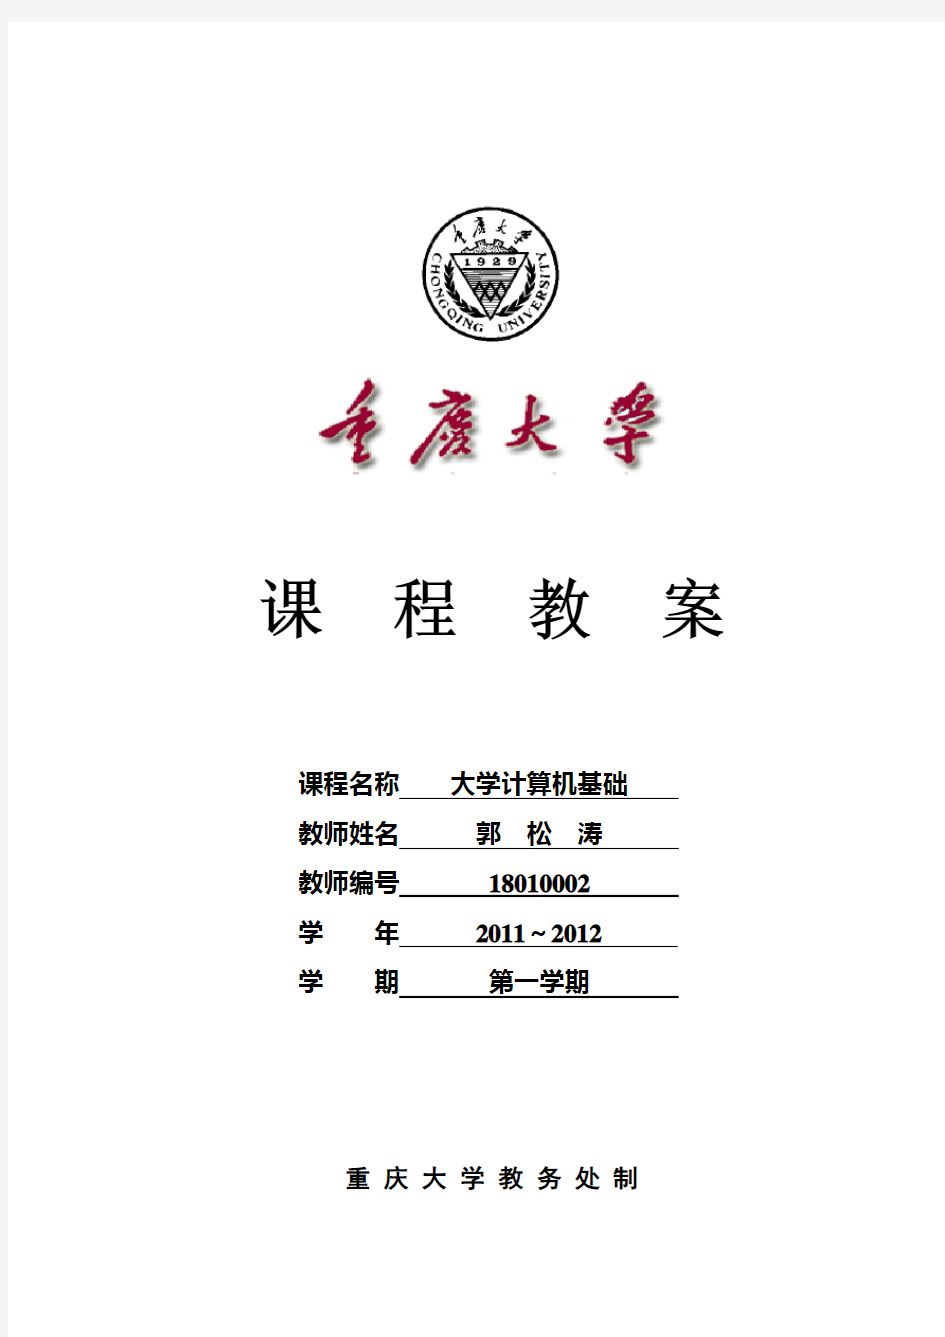 《大学计算机基础》课程教案 - 重庆大学计算机学院